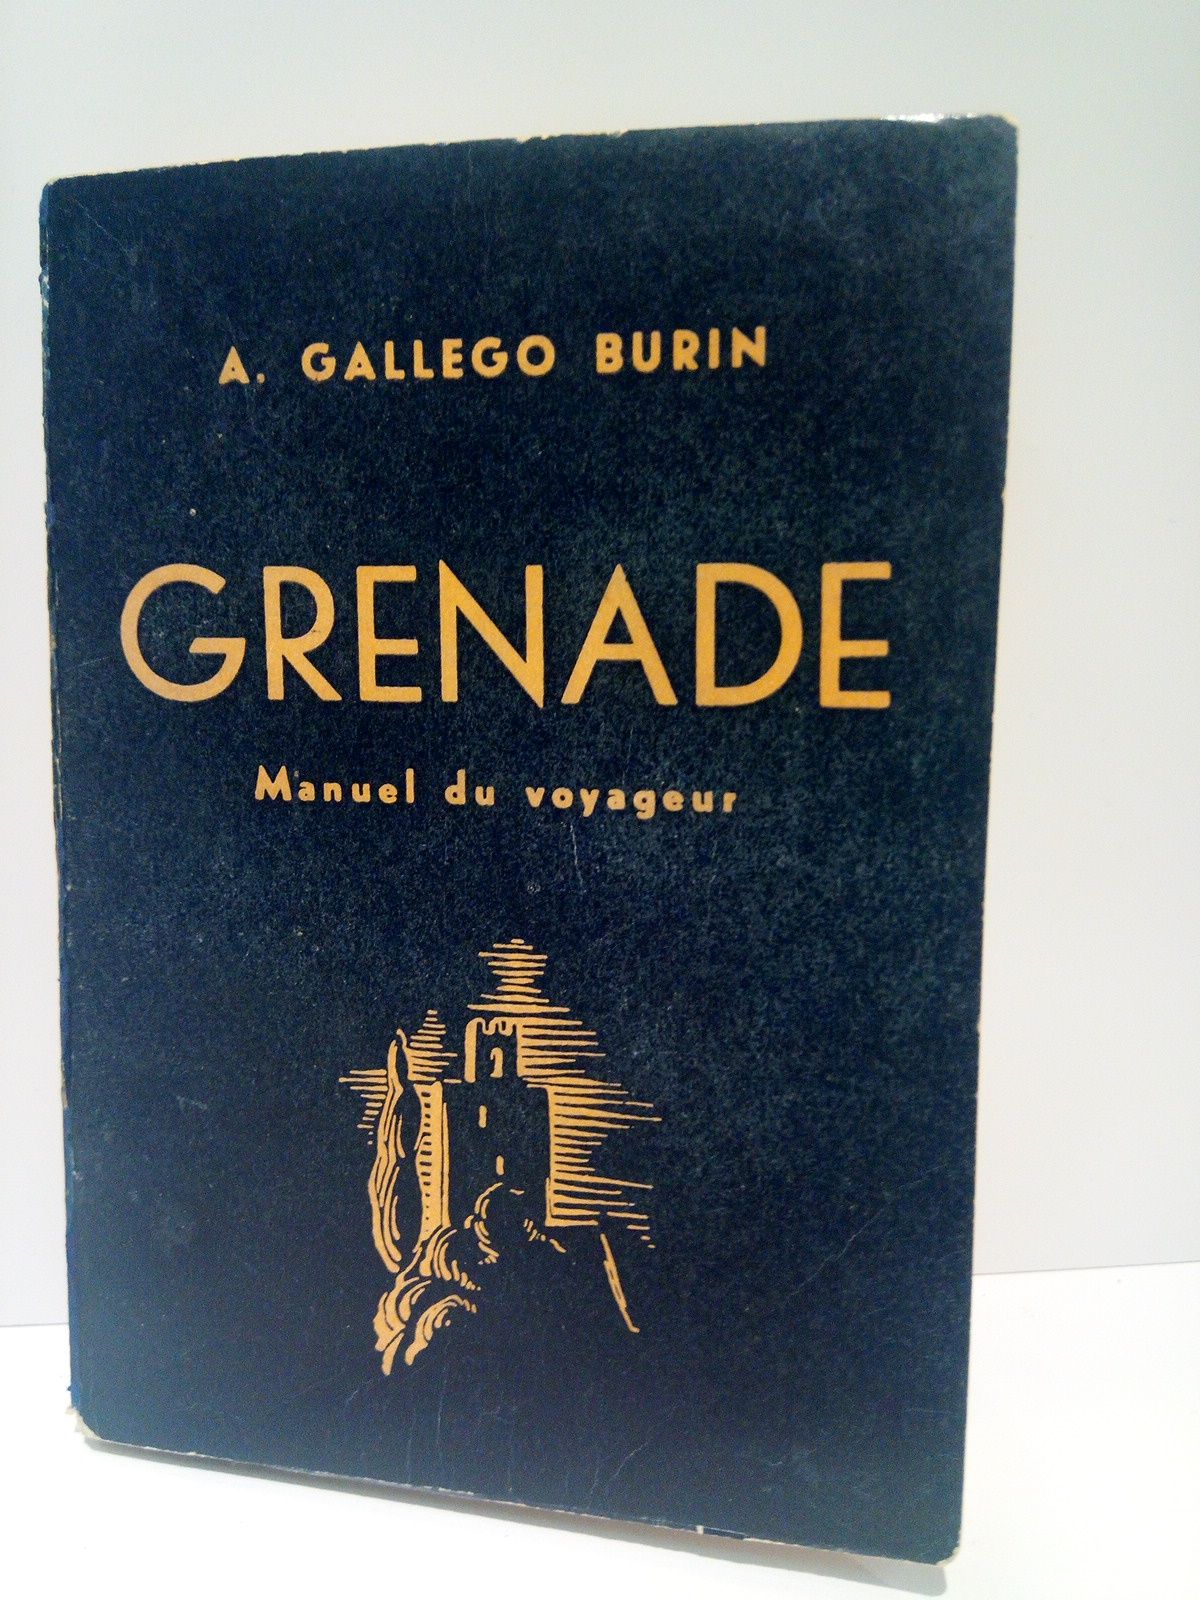 GALLEGO BURIN, Antonio - GRENADE: Manuel du Voyageur